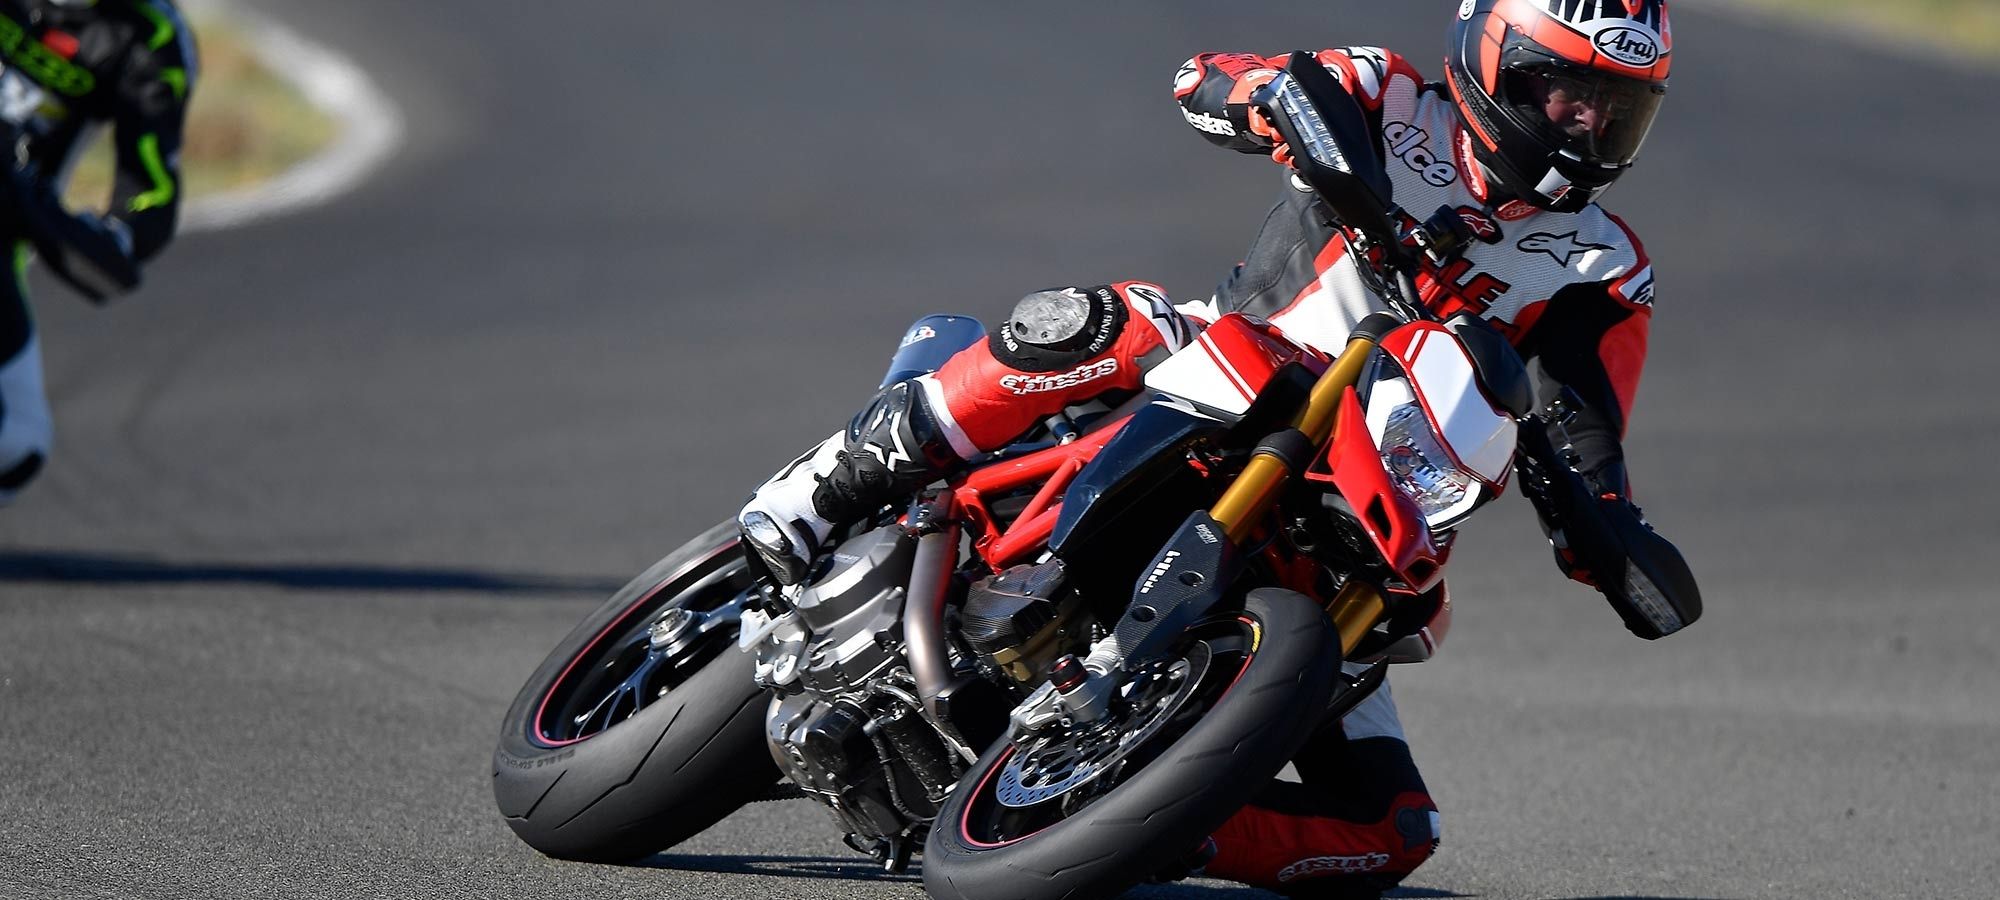 2019 Ducati Hypermotard 950 5 - موتورسیکلت دوکاتی هایپر موتارد 950 مدل 2019